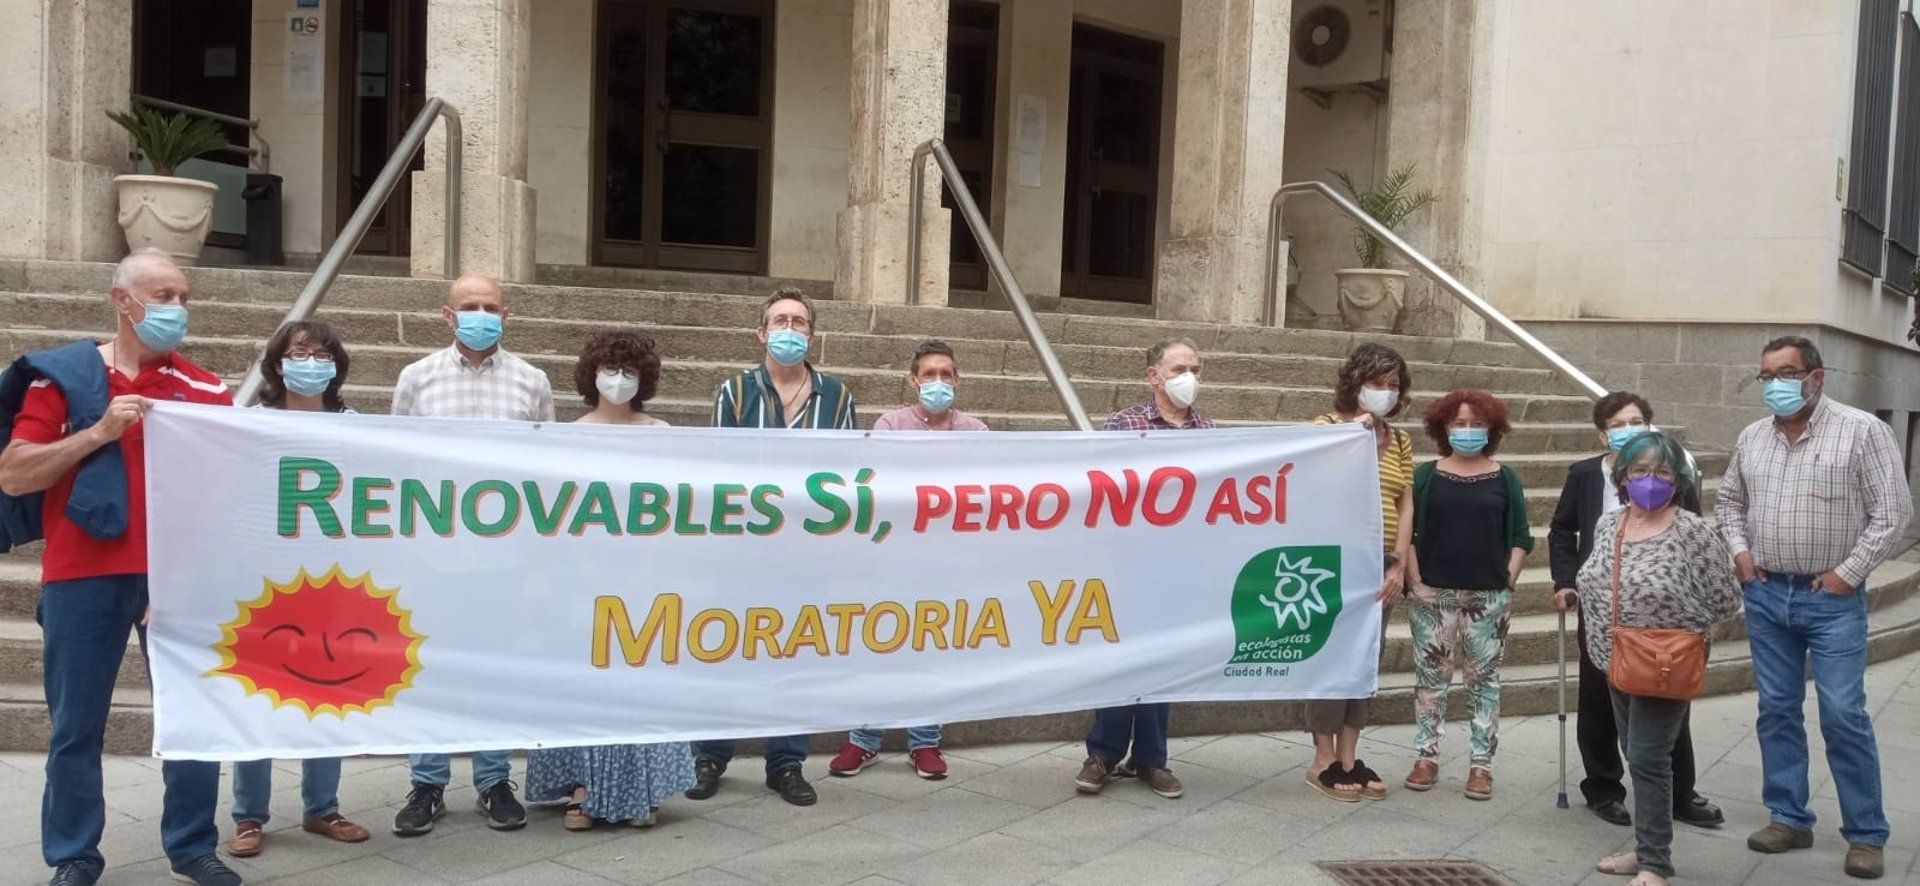 Protesta en Ciudad Real contra los impactos ambientales asociados el despliegue de macrocentrales solares / Foto: EP